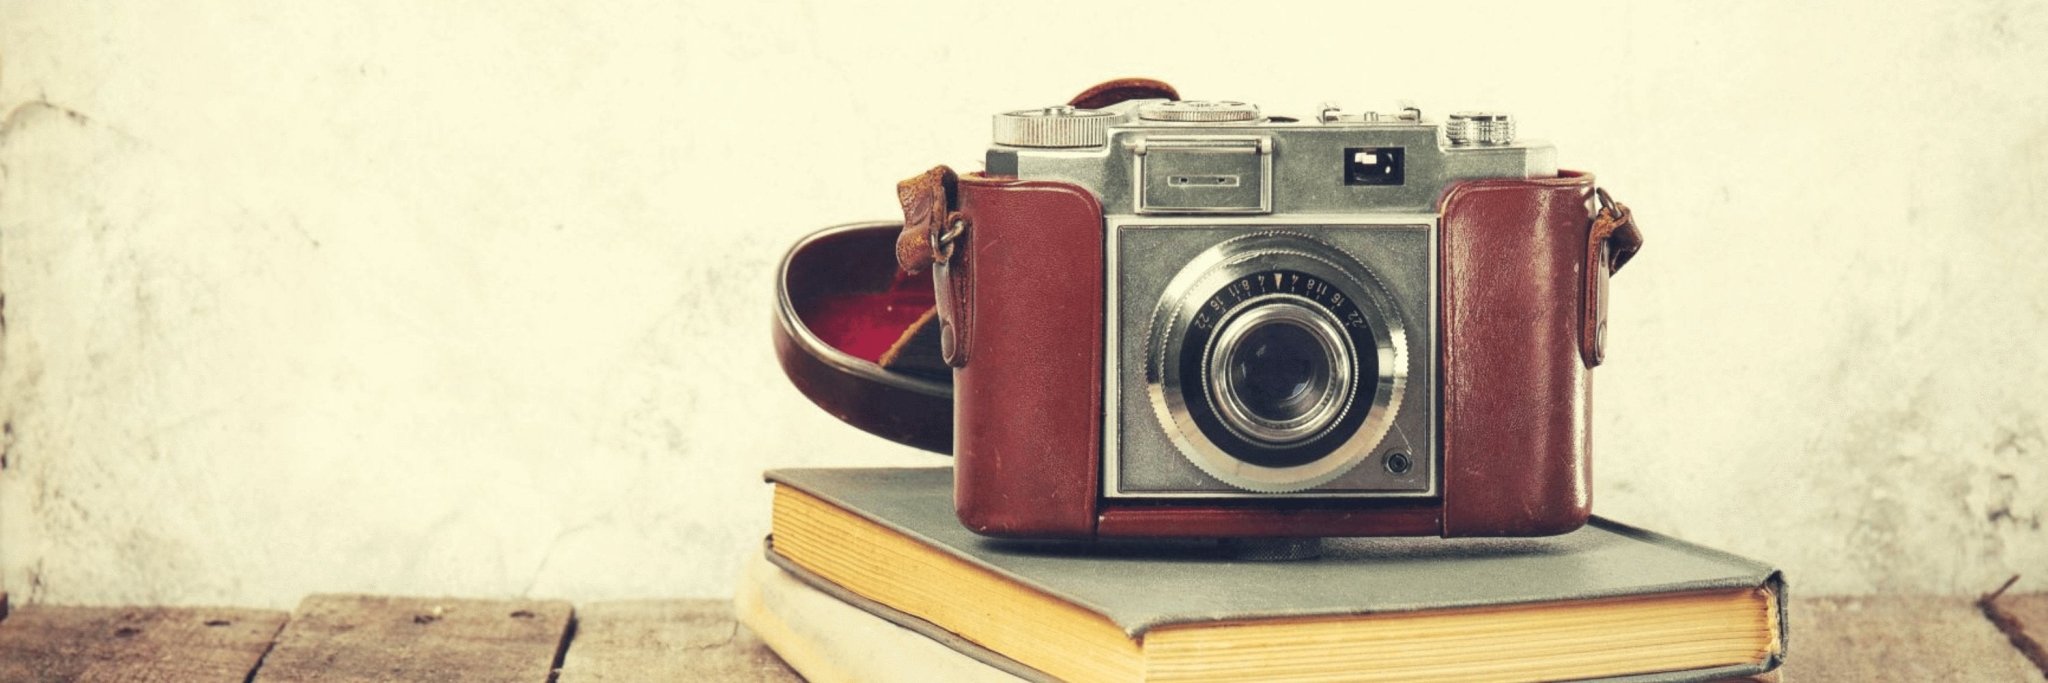 Photo d'un appareil photo vintage pour la collection photo sur bois-BoisFrancK